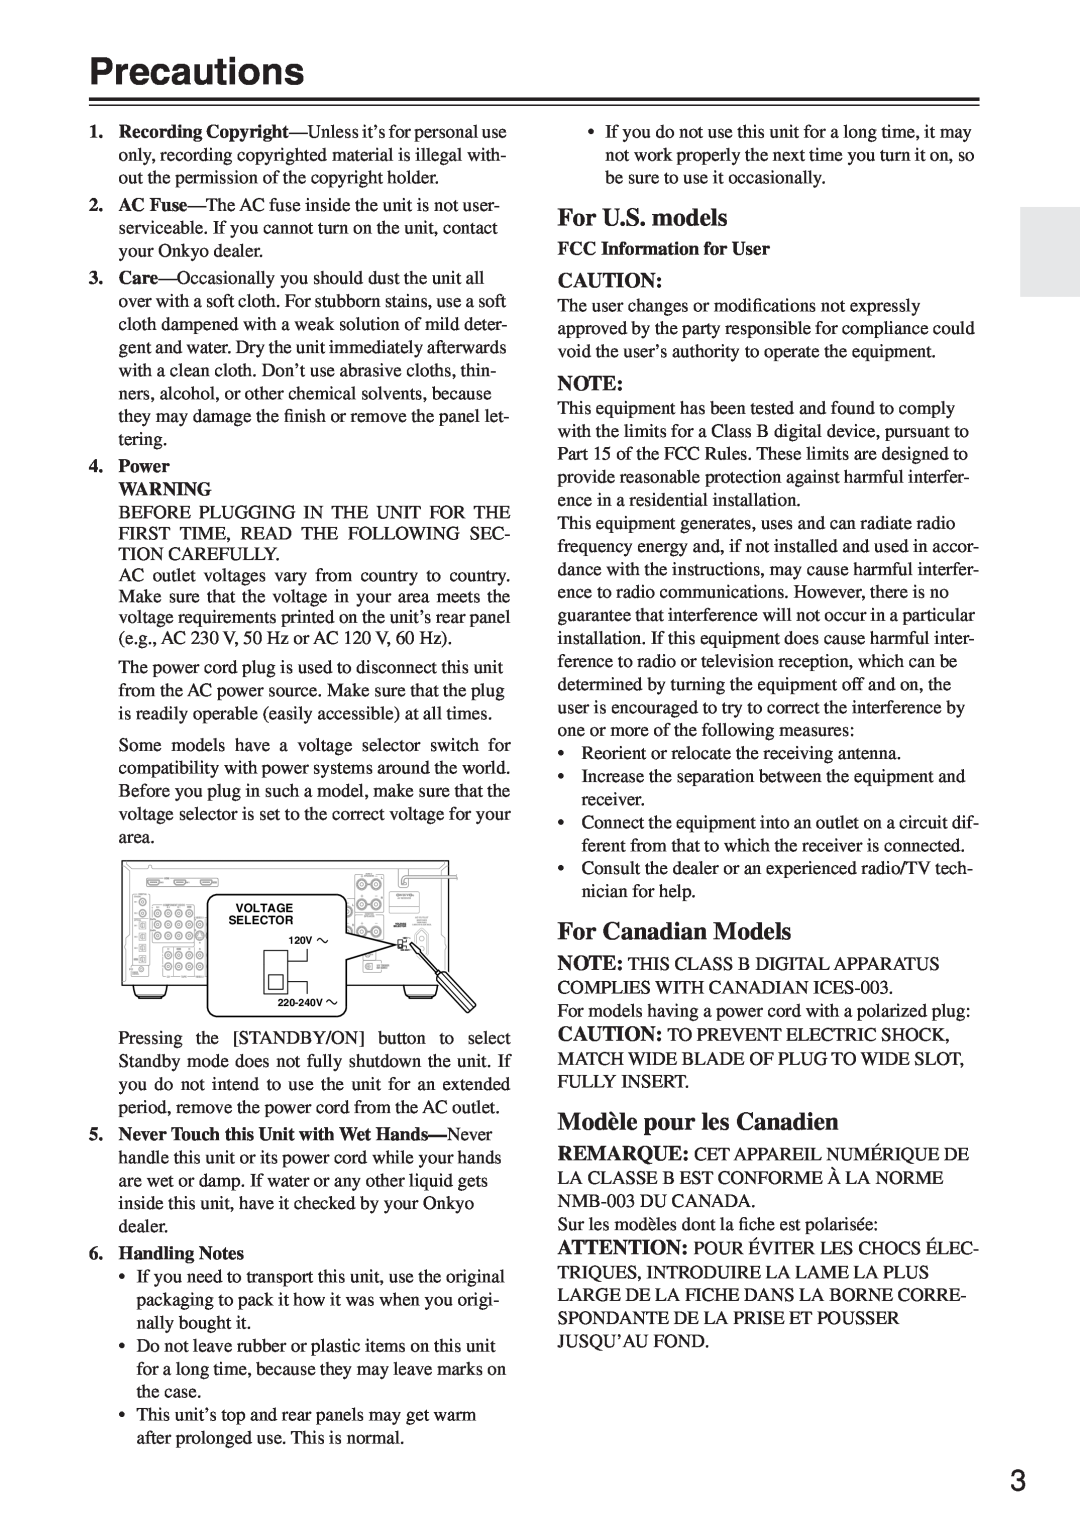 Onkyo TX-SR674/674E Precautions, For U.S. models, For Canadian Models, Modèle pour les Canadien, Power, Handling Notes 